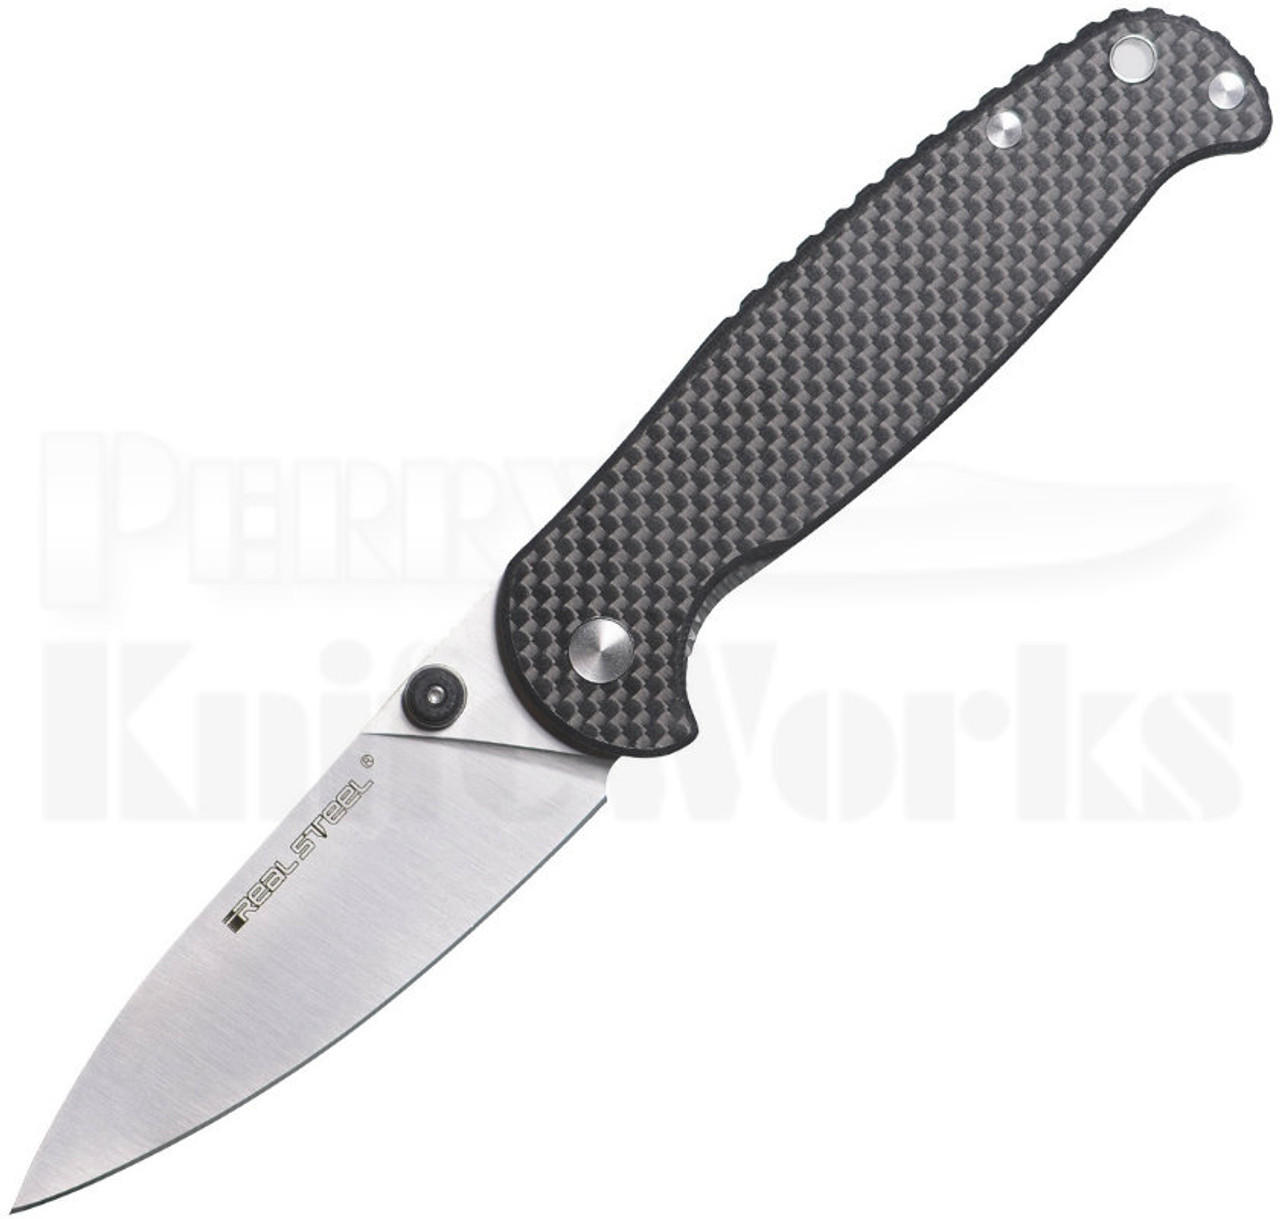 Real Steel H6 Elegance CF/G10 Linerlock Knife